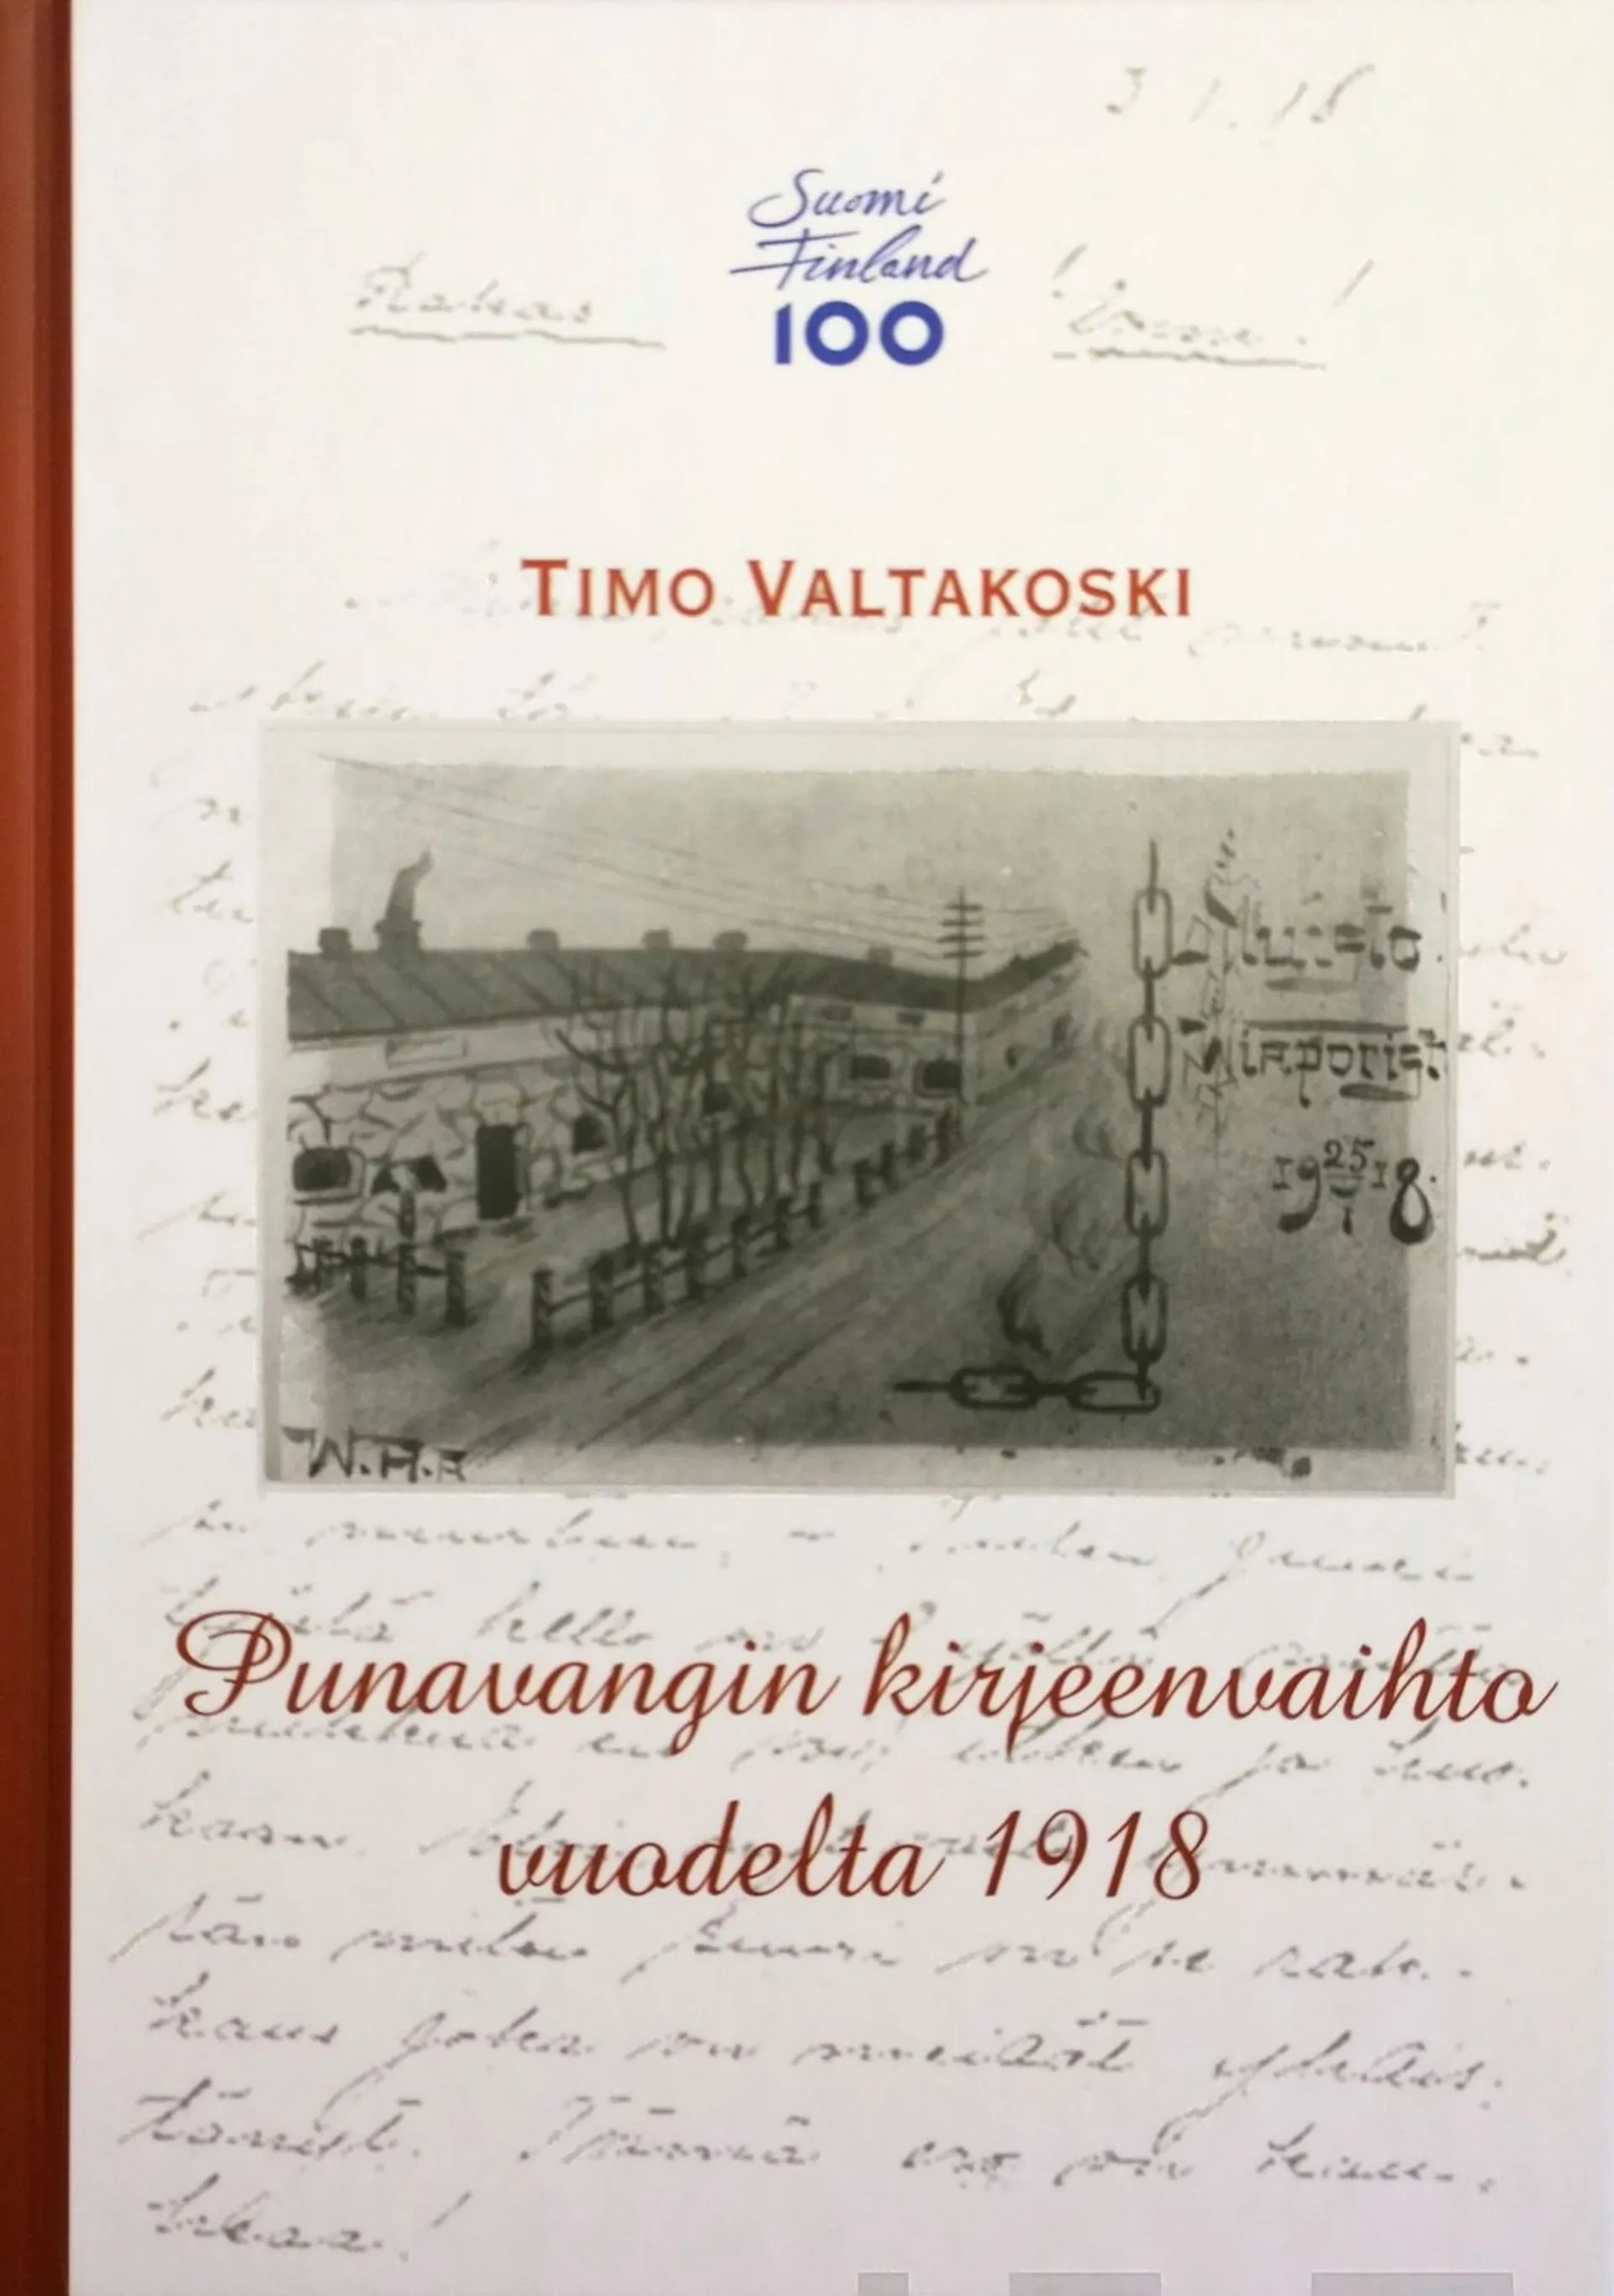 Valtakoski, Punavangin kirjeenvaihto vuodelta 1918